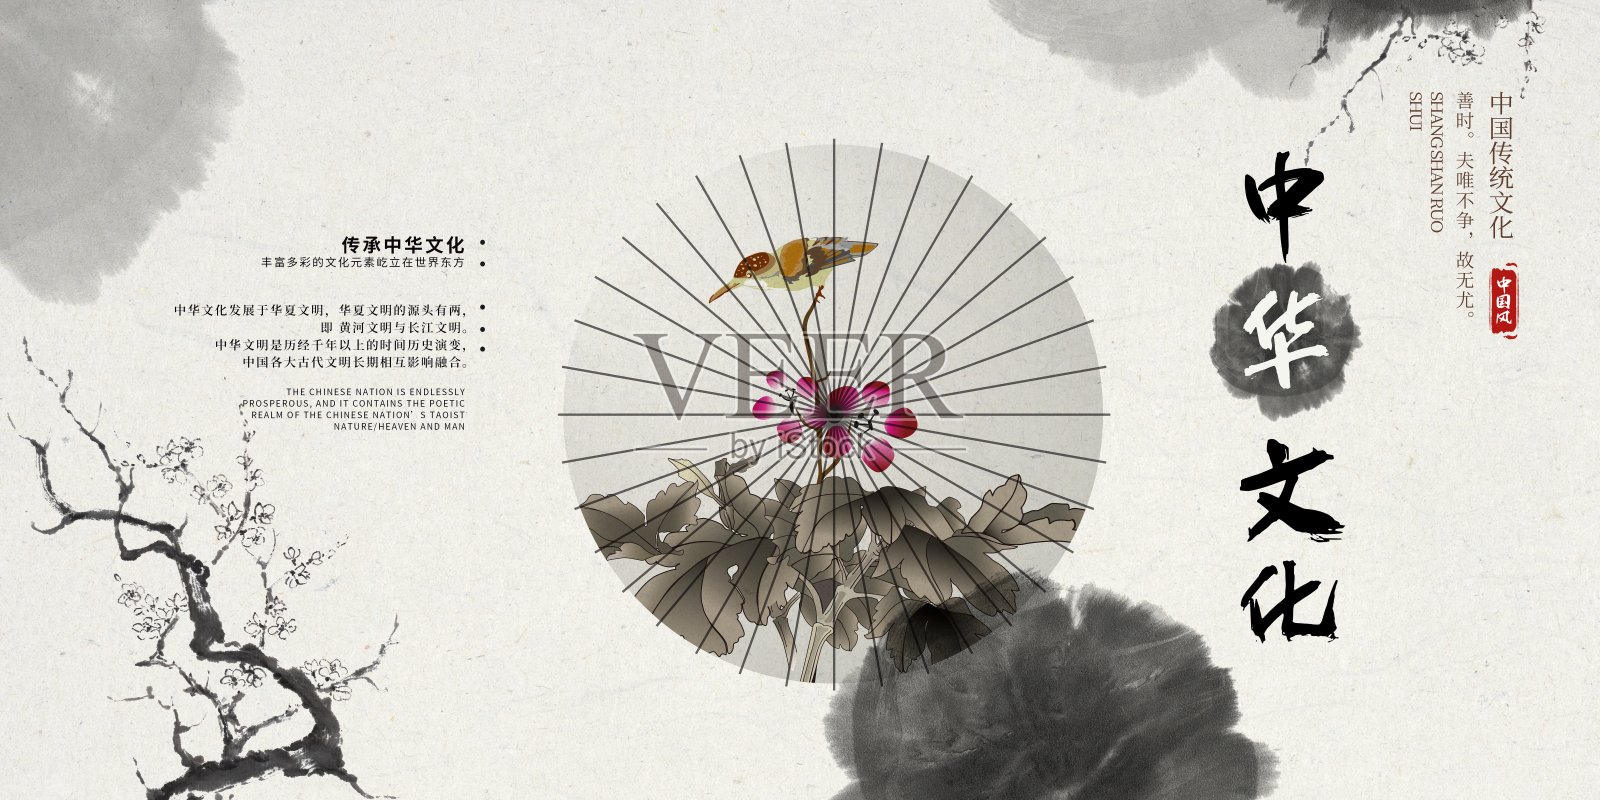 水墨中国风中华文化宣传展板设计模板素材